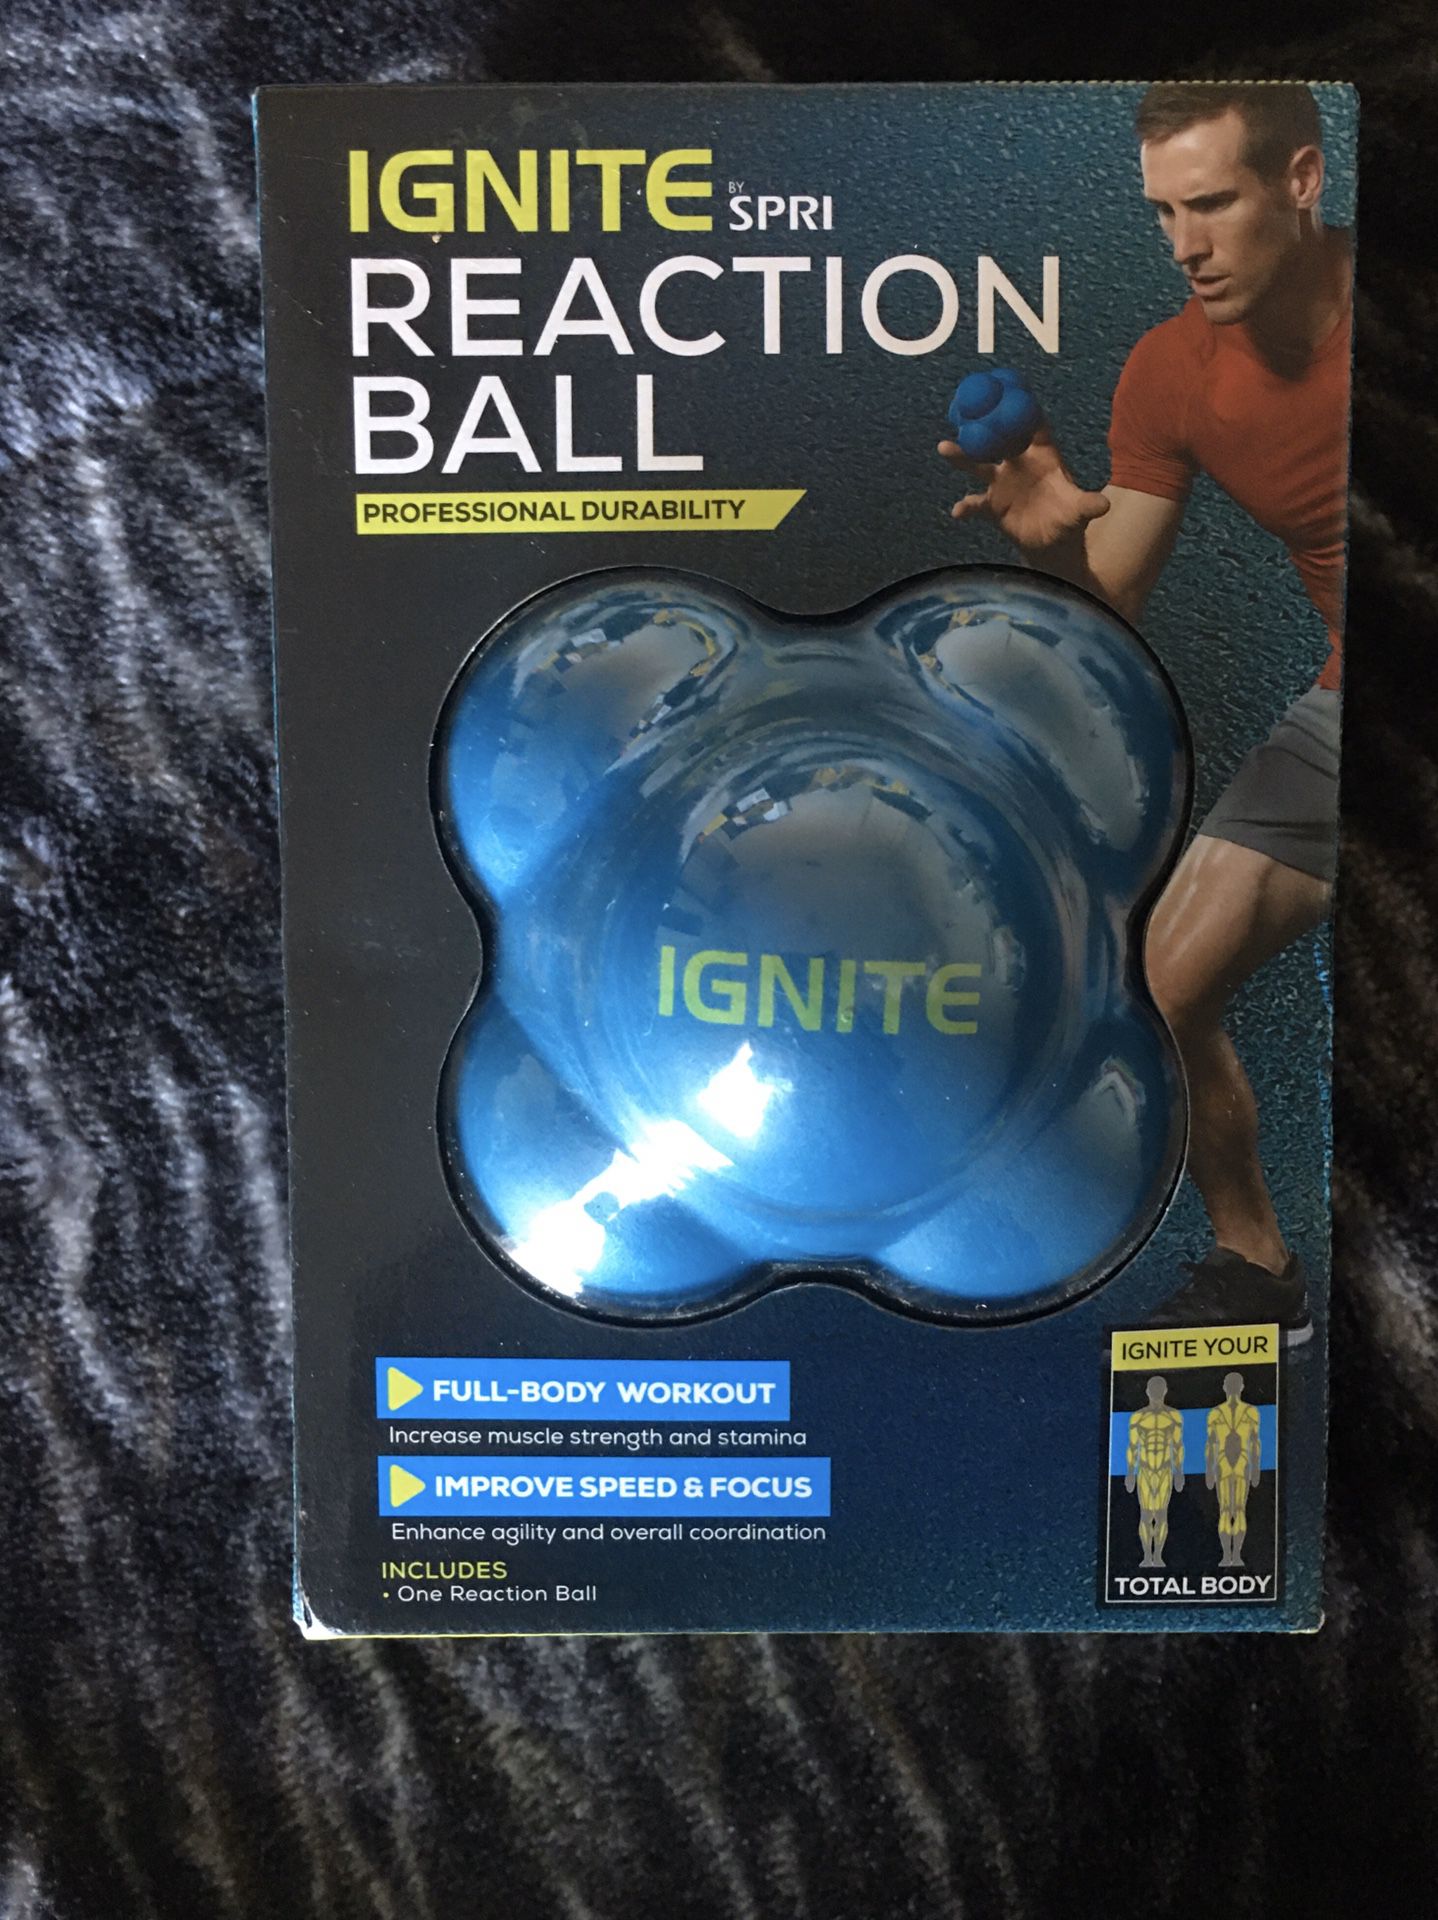 Reaction ball